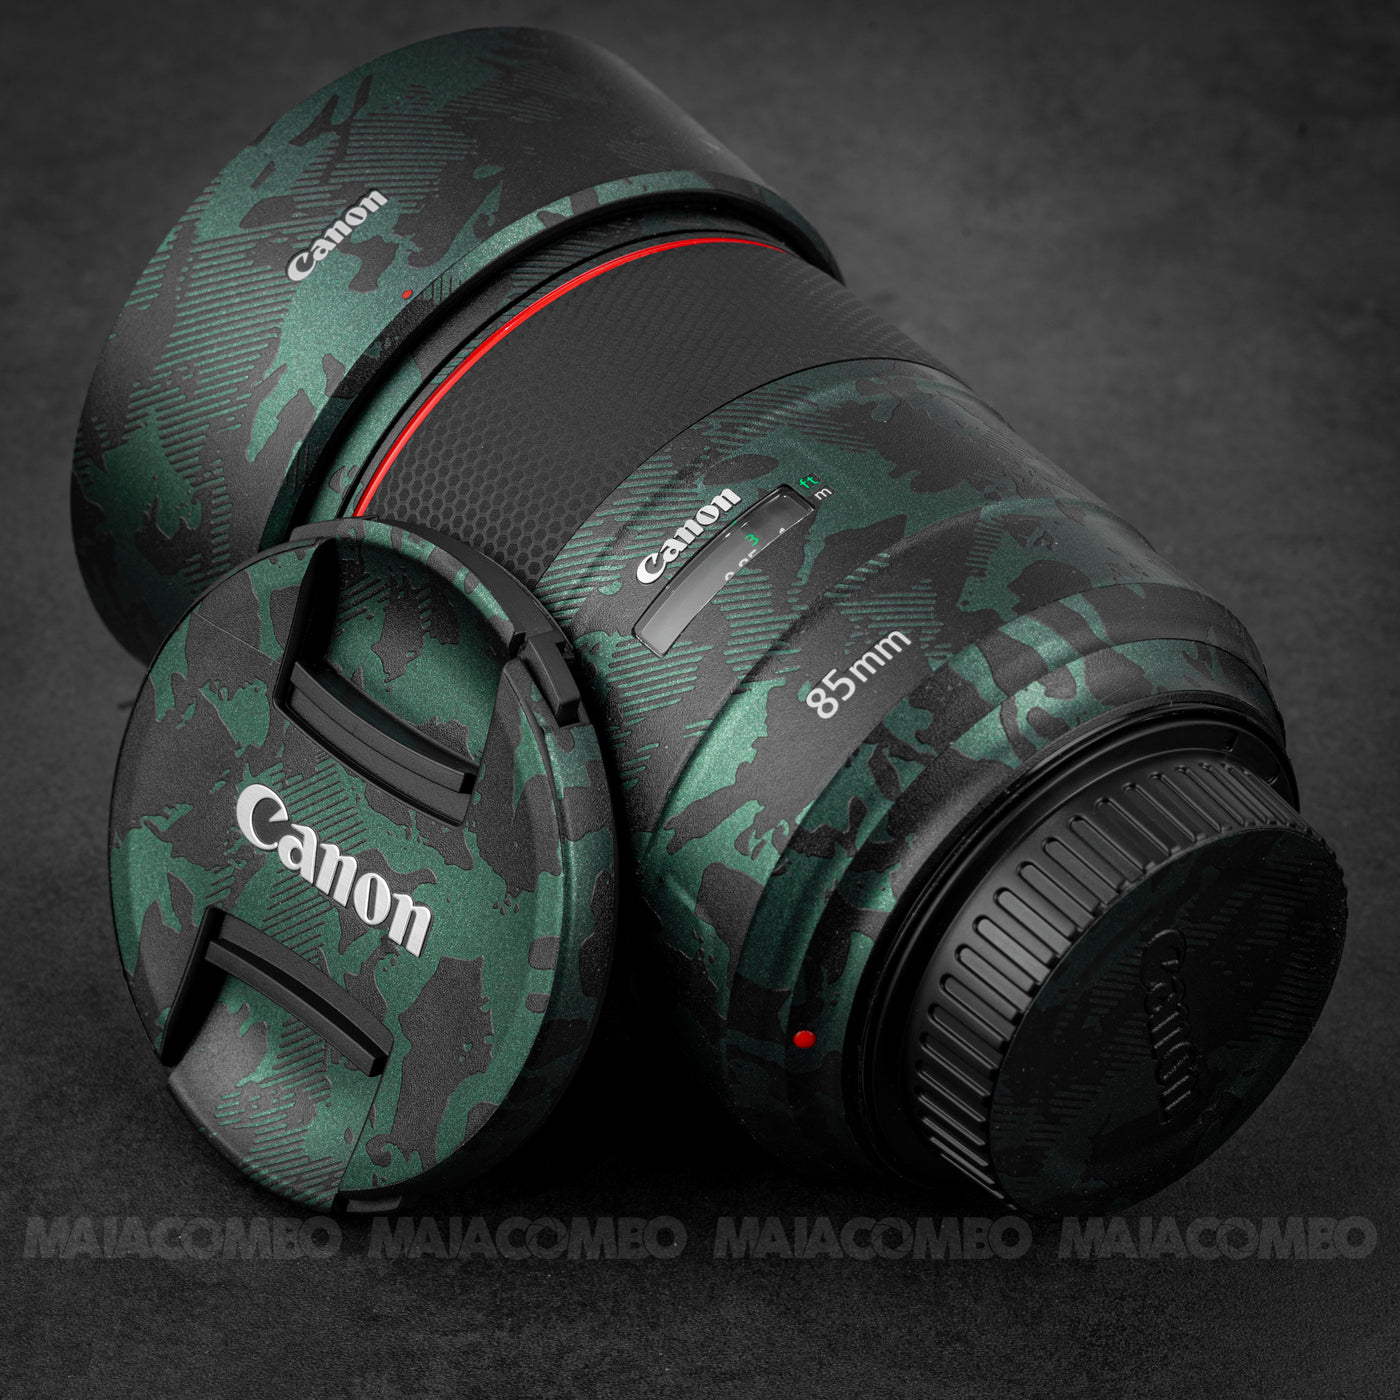 Canon EF 85mm F1.4L IS USM Lens Skin